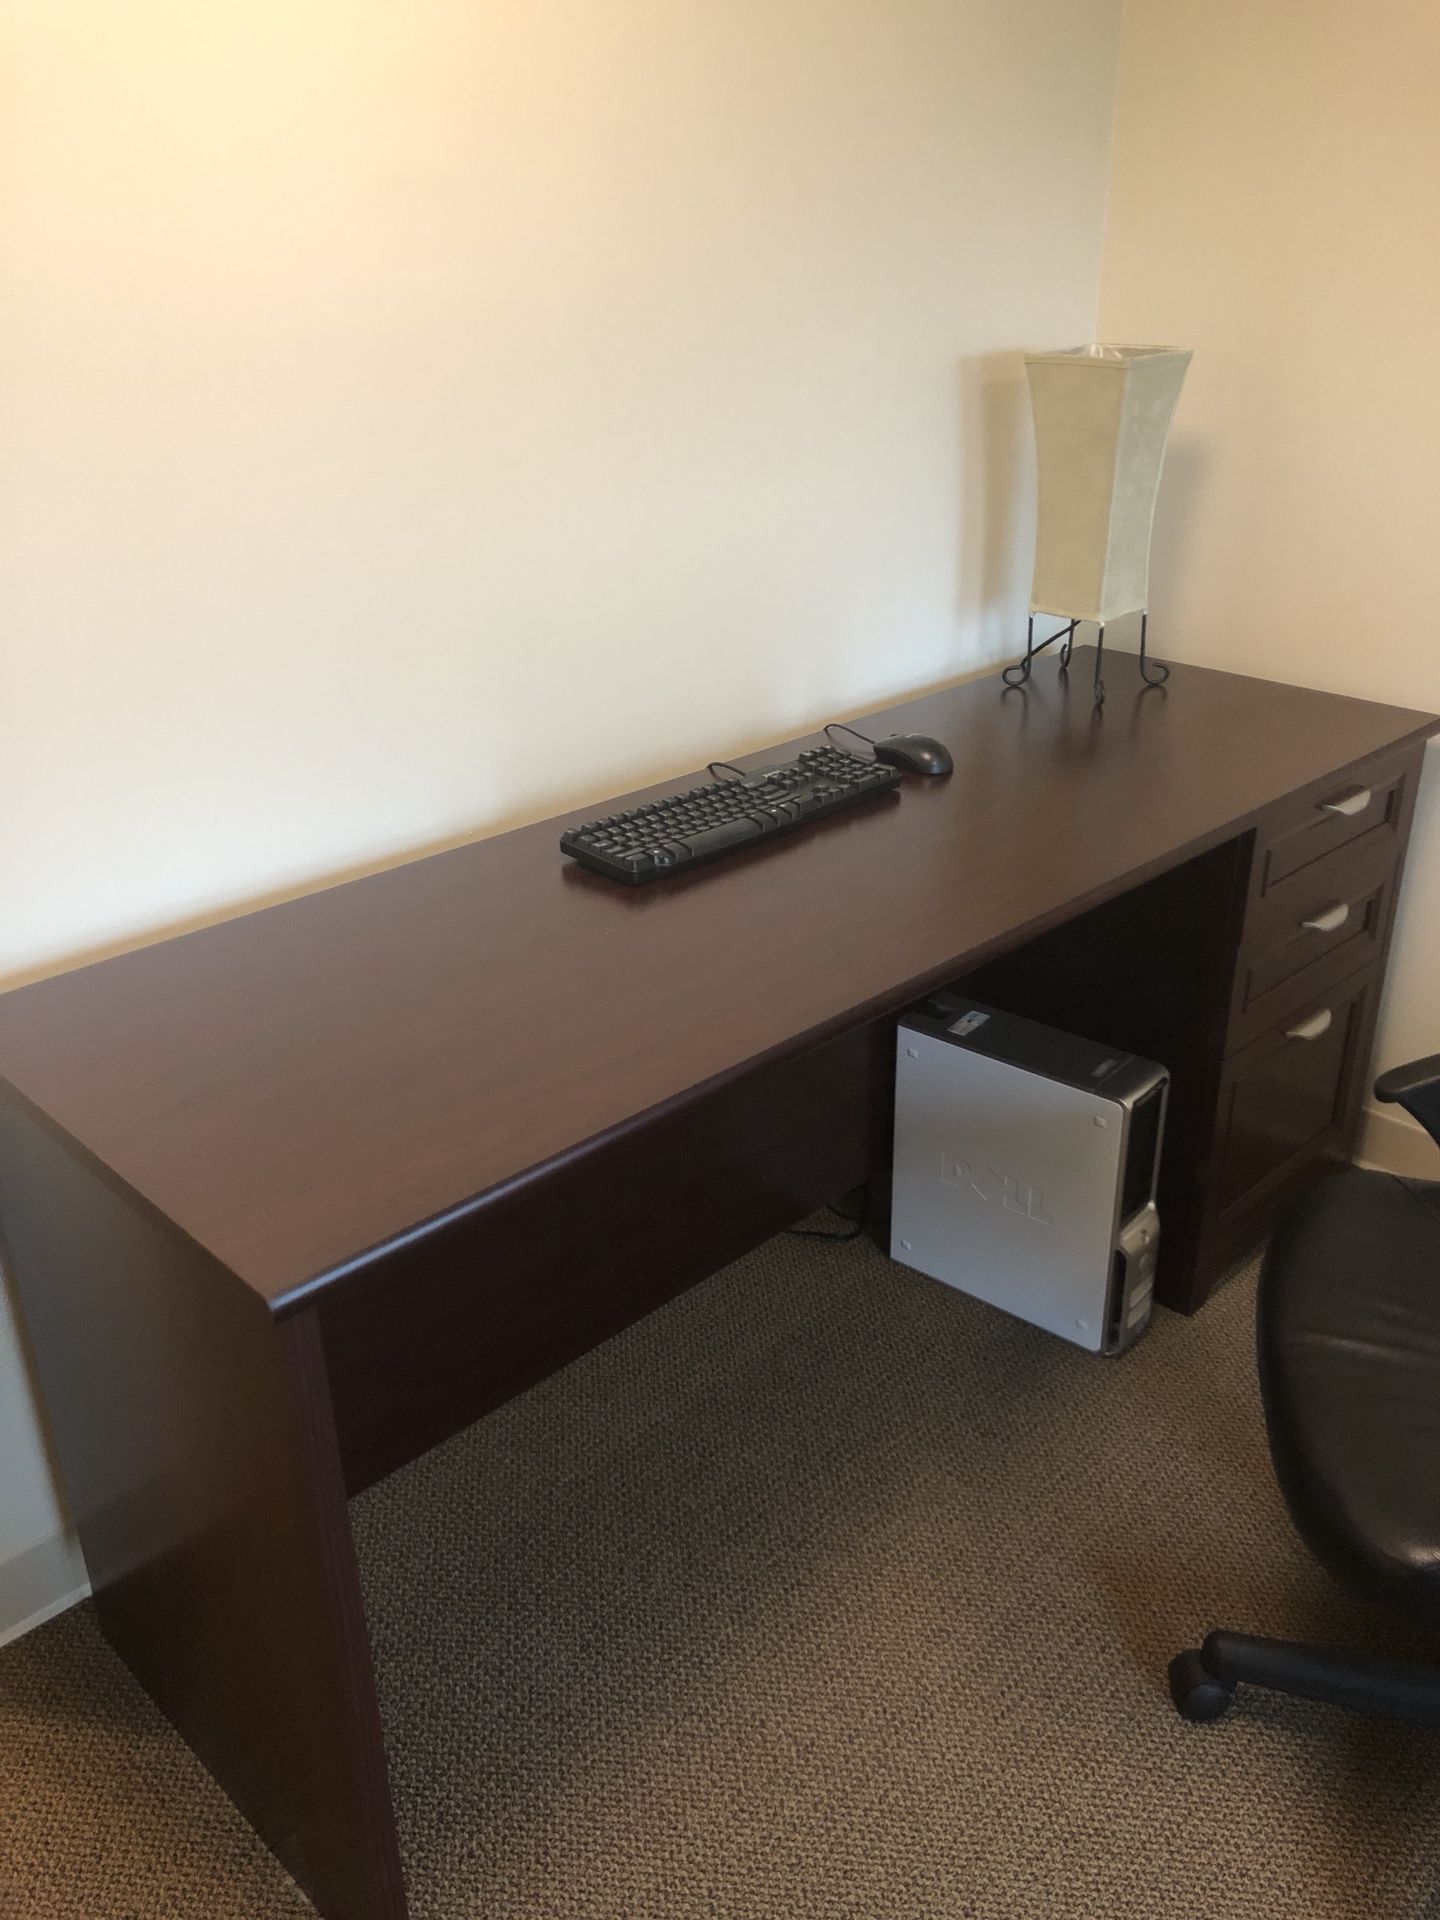 Desks from Office Depot